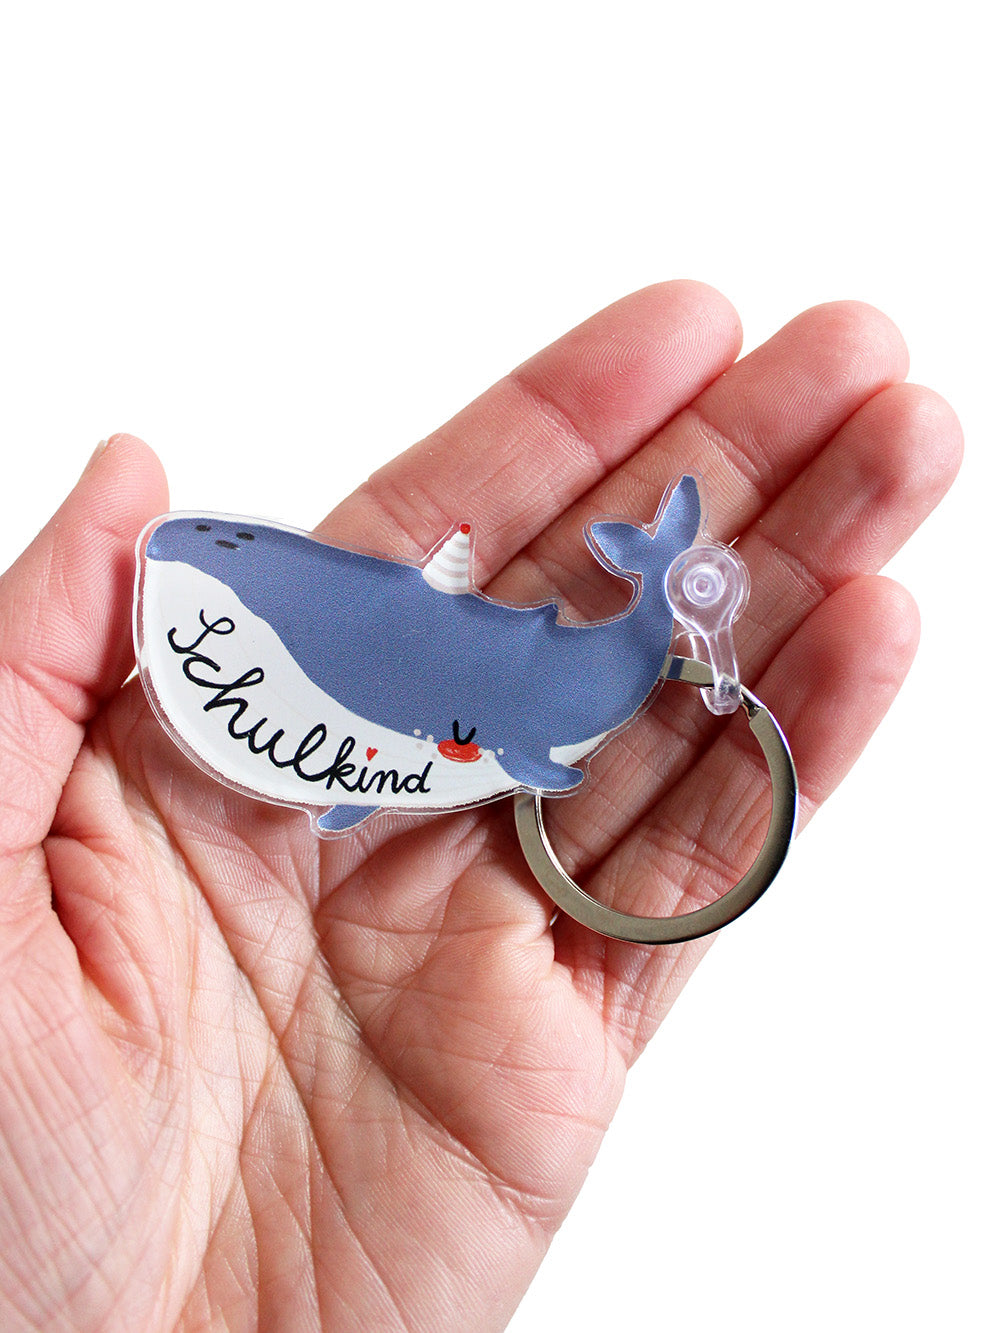 Nahaufnahme eines Schlüsselanhänger in Form eines Wals mit Schriftzug Schulkind in den Farben blau und weiß mit Partyhut in Hand liegend